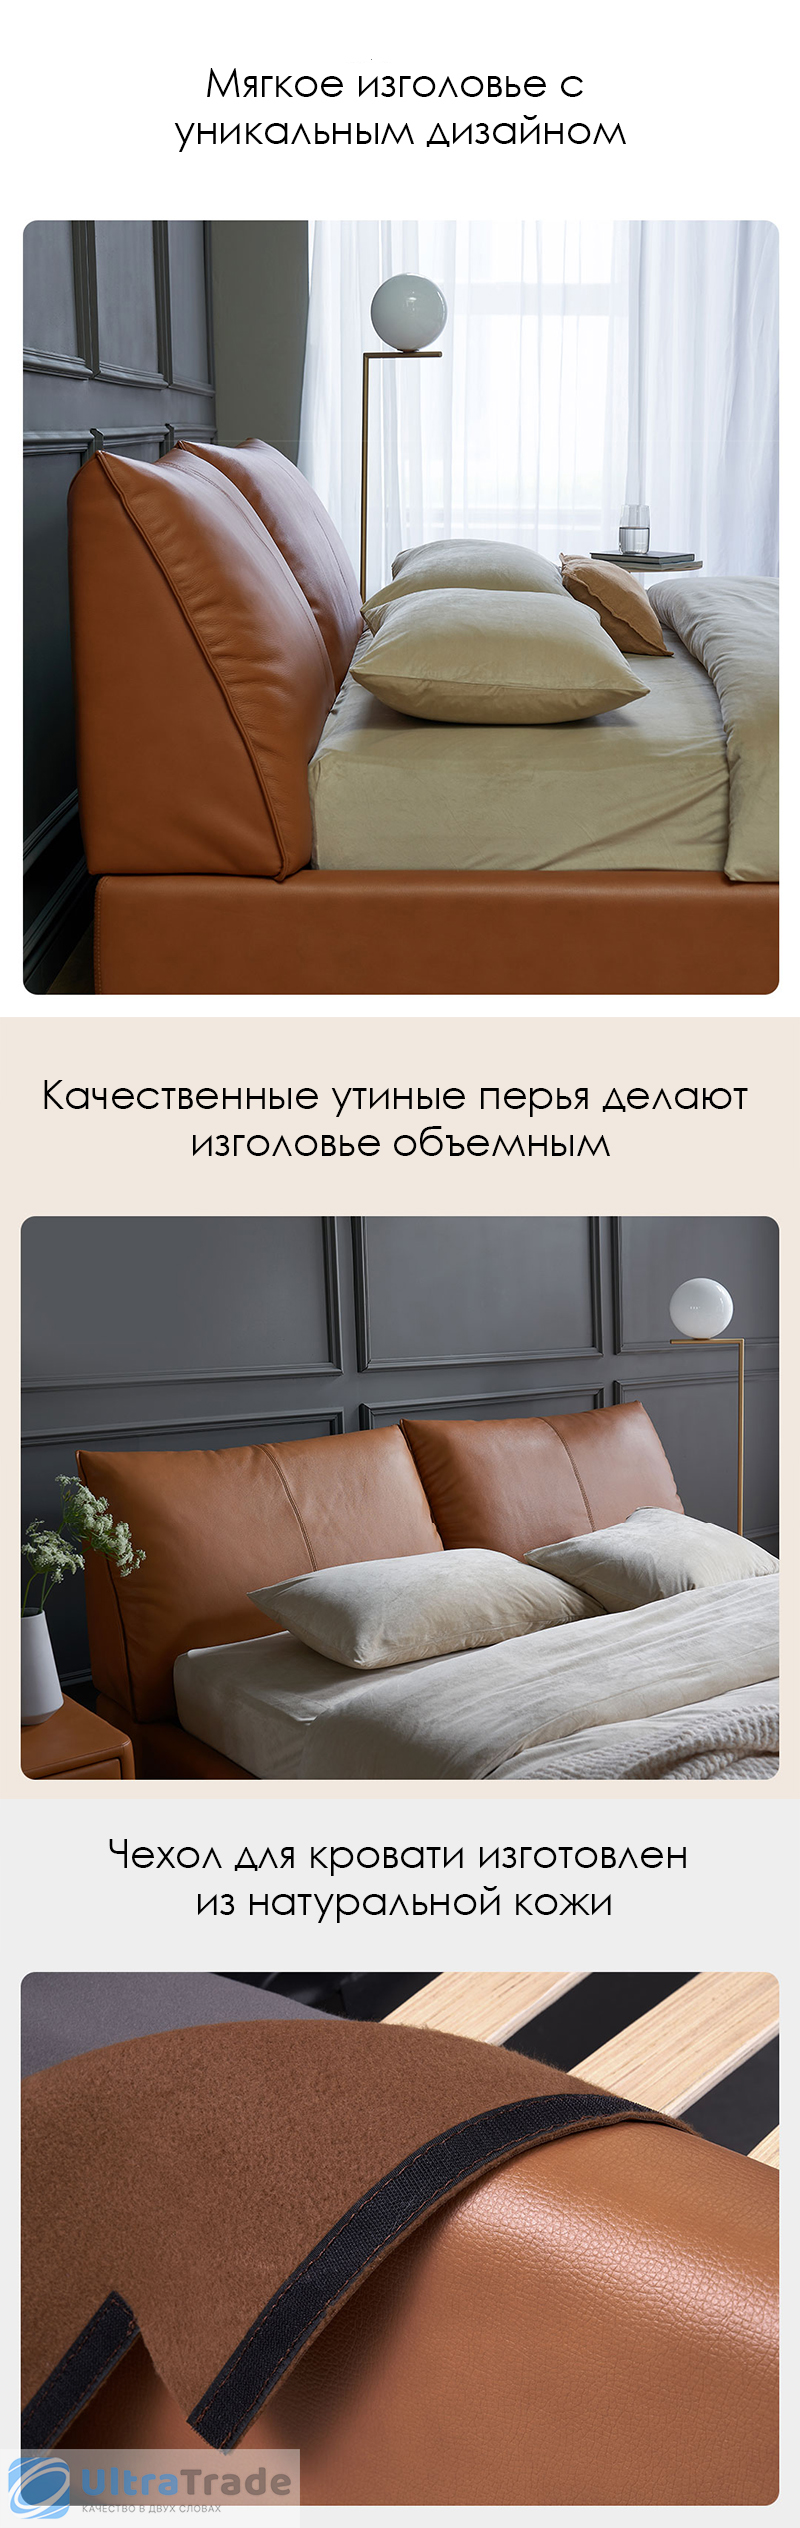 Двуспальная кровать с подъемным механизмом Xiaomi Yang Zi Look Soufflé Leather Storage Bed Set 1.5 m Orange  (1 тумбочка в комплекте)